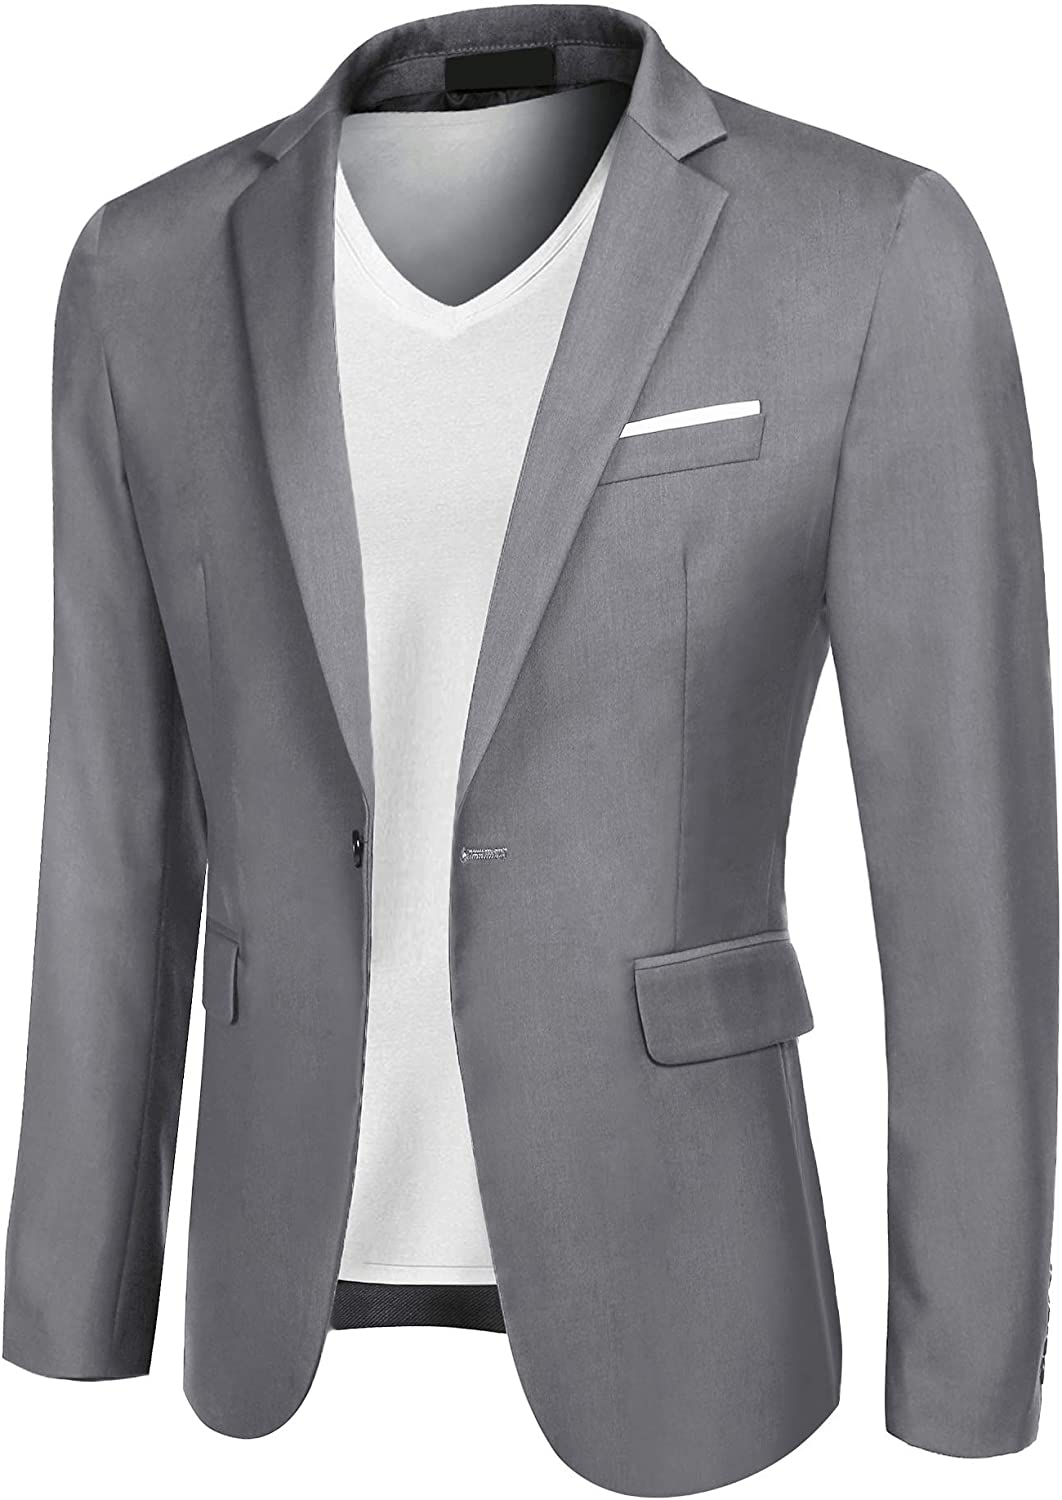 JINIDU Mens Slim Fit Blazer Jacket Casual One Button Suit Coat